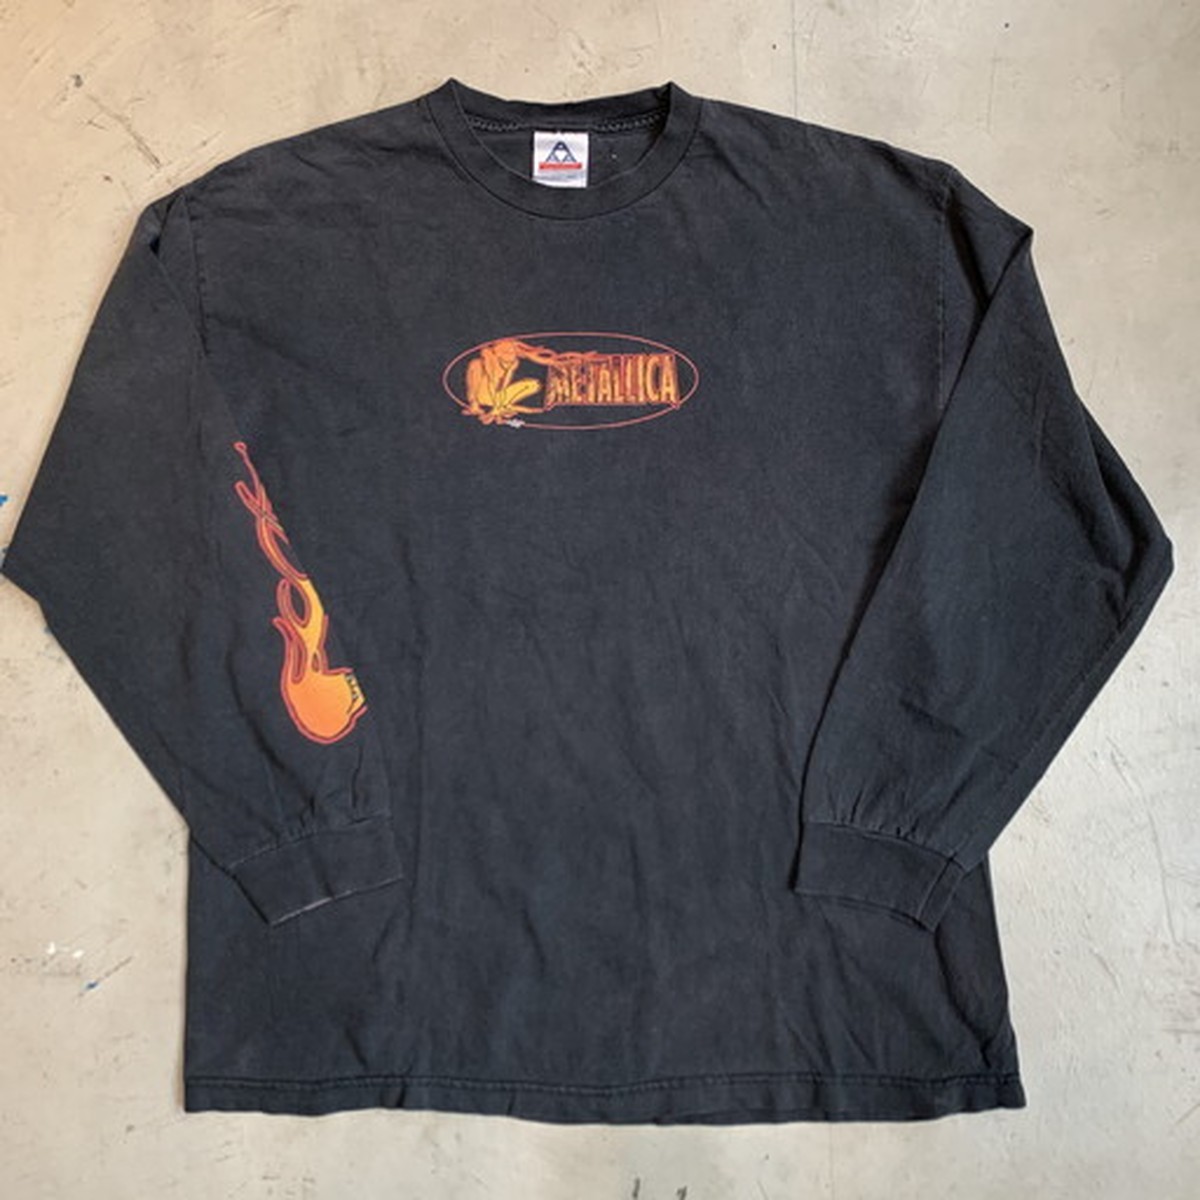 90's METALLICA メタリカ 長袖Tシャツ ロンTee 袖プリ 1999年 Squindo へヴィーメタル ロック ブラック XL